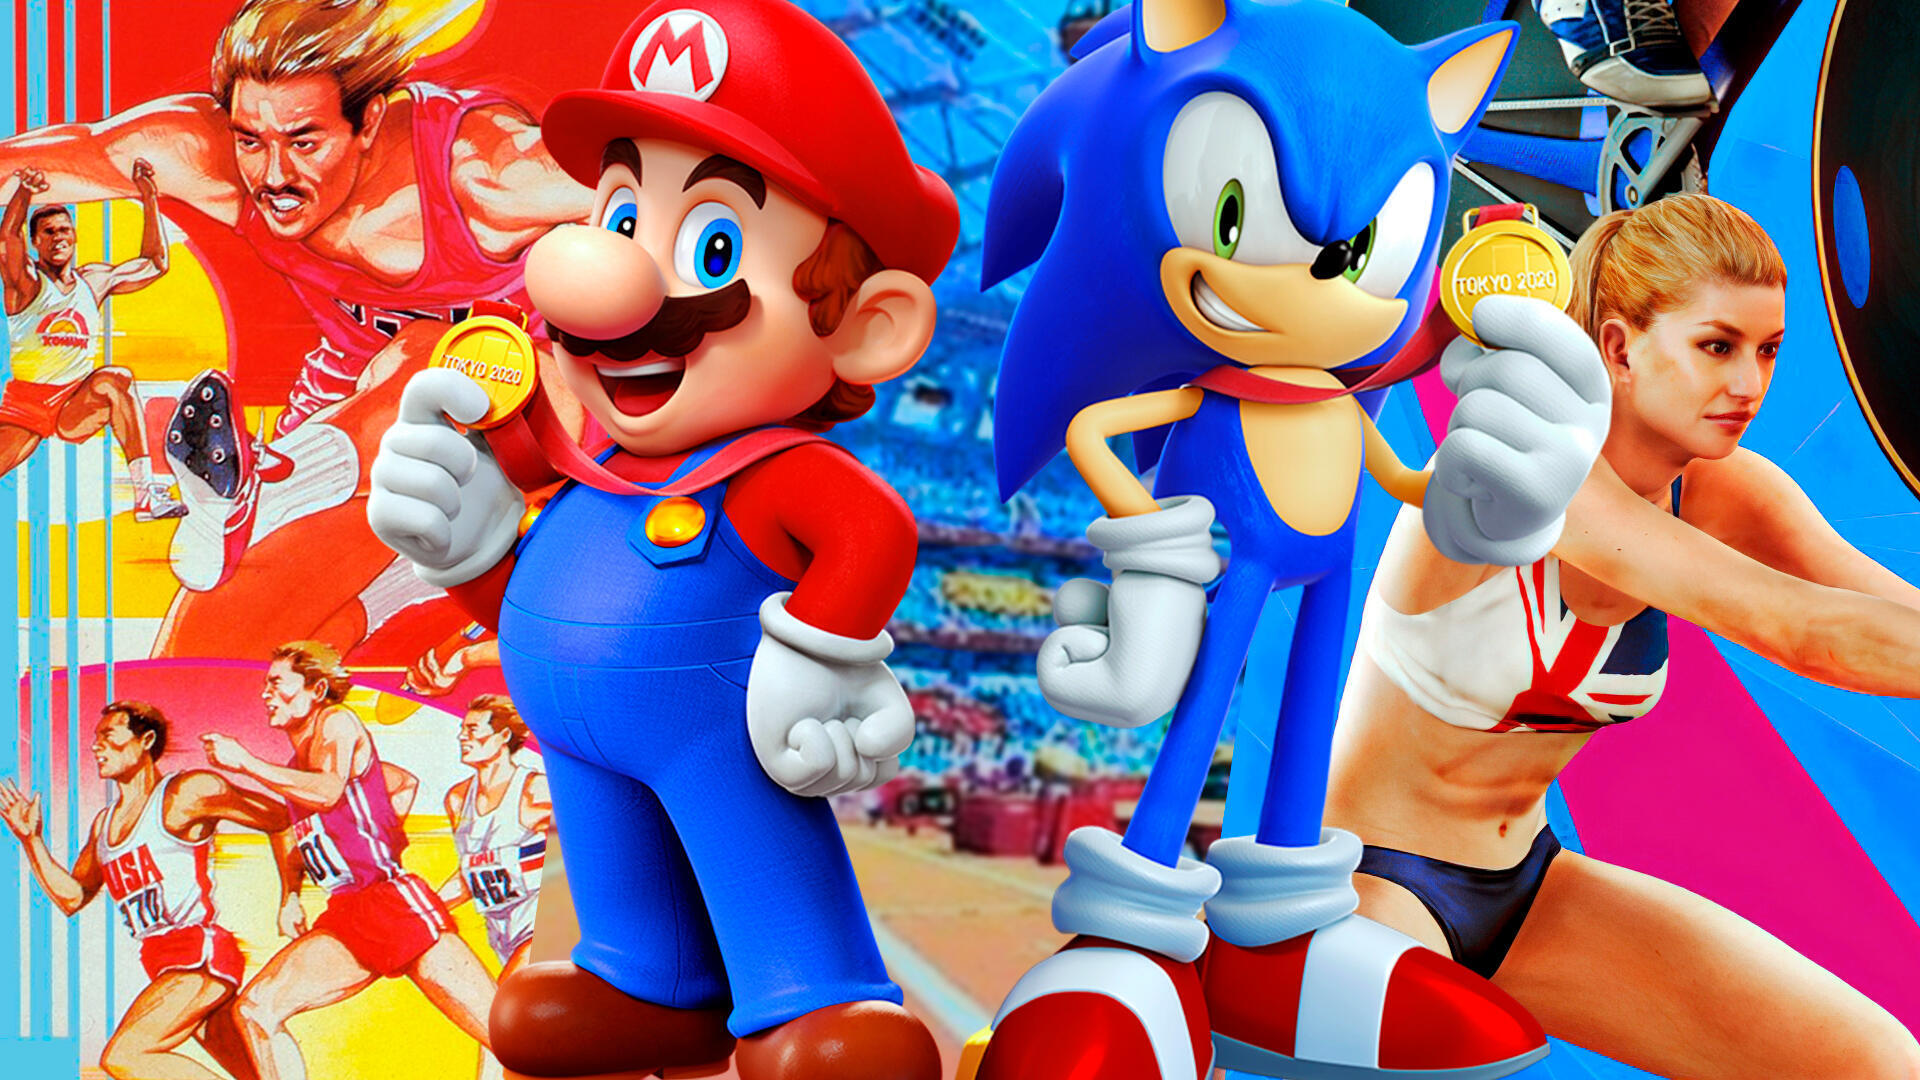 Las Olimpiadas a los videojuegos: desde Track & Field hasta Mario y Sonic